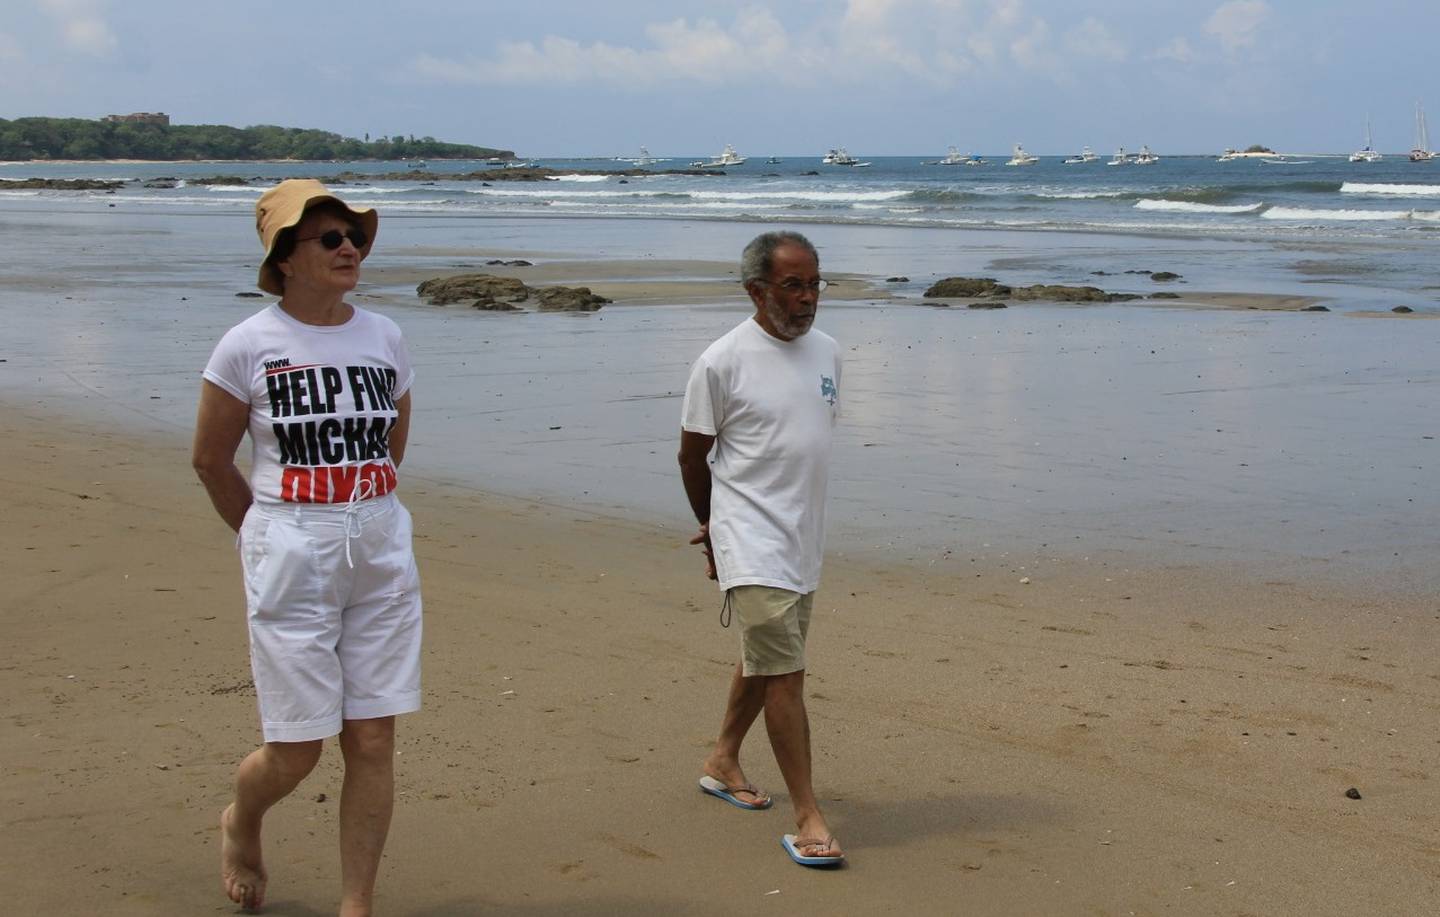 Michael Dixon, periodista inglés que desapareció sin dejar rastro el 18 de octubre de 2009 en Tamarindo, Guanacaste. Foto cortesía Michael Dixon.